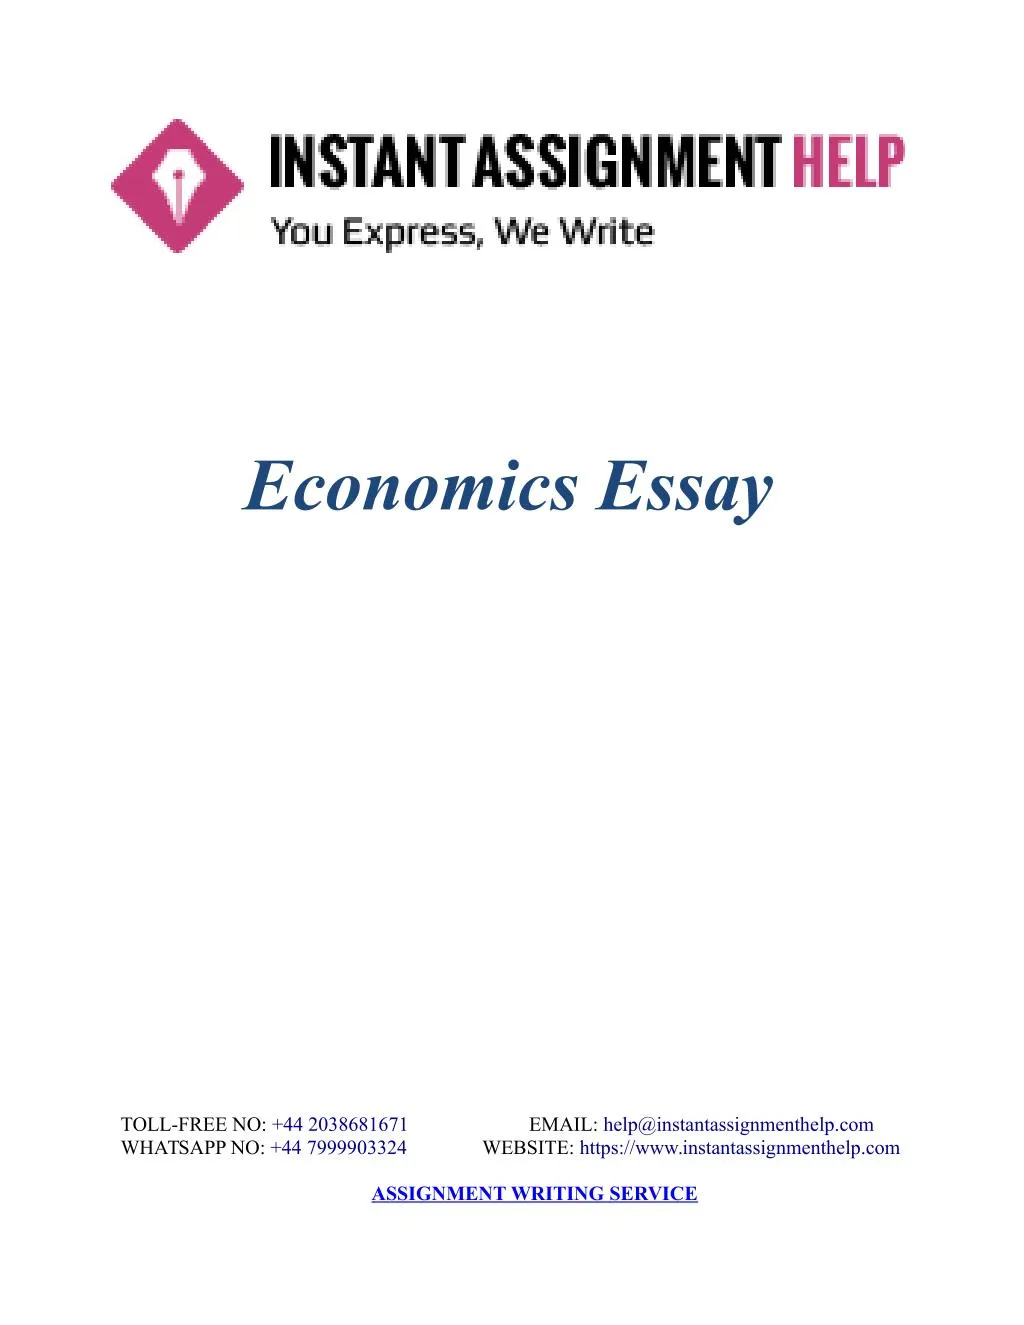 Economics assignments essays